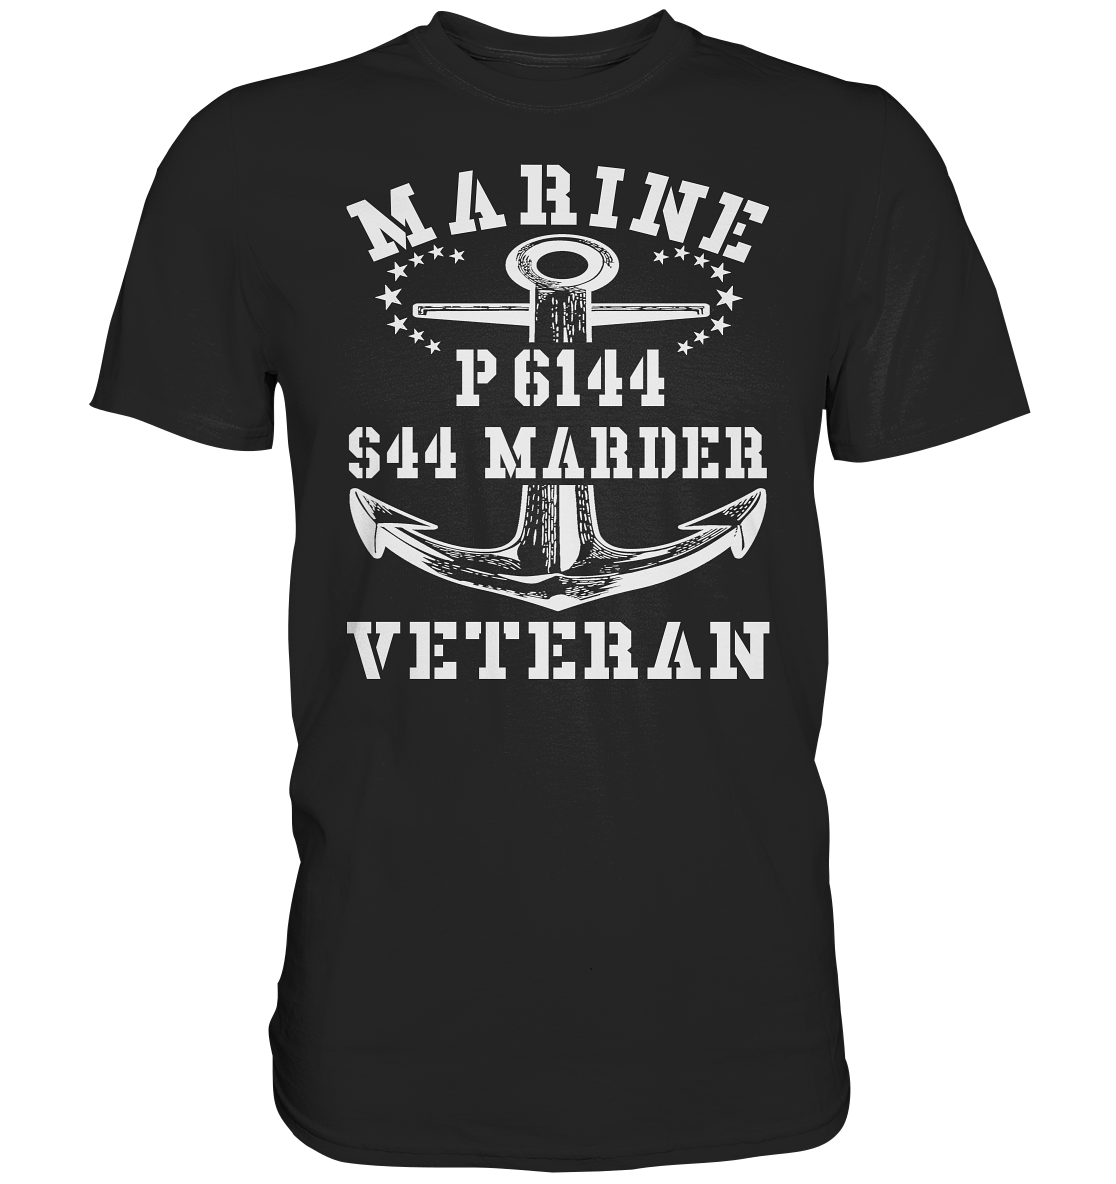 P6144 S44 MARDER Marine Veteran - Premium Shirt